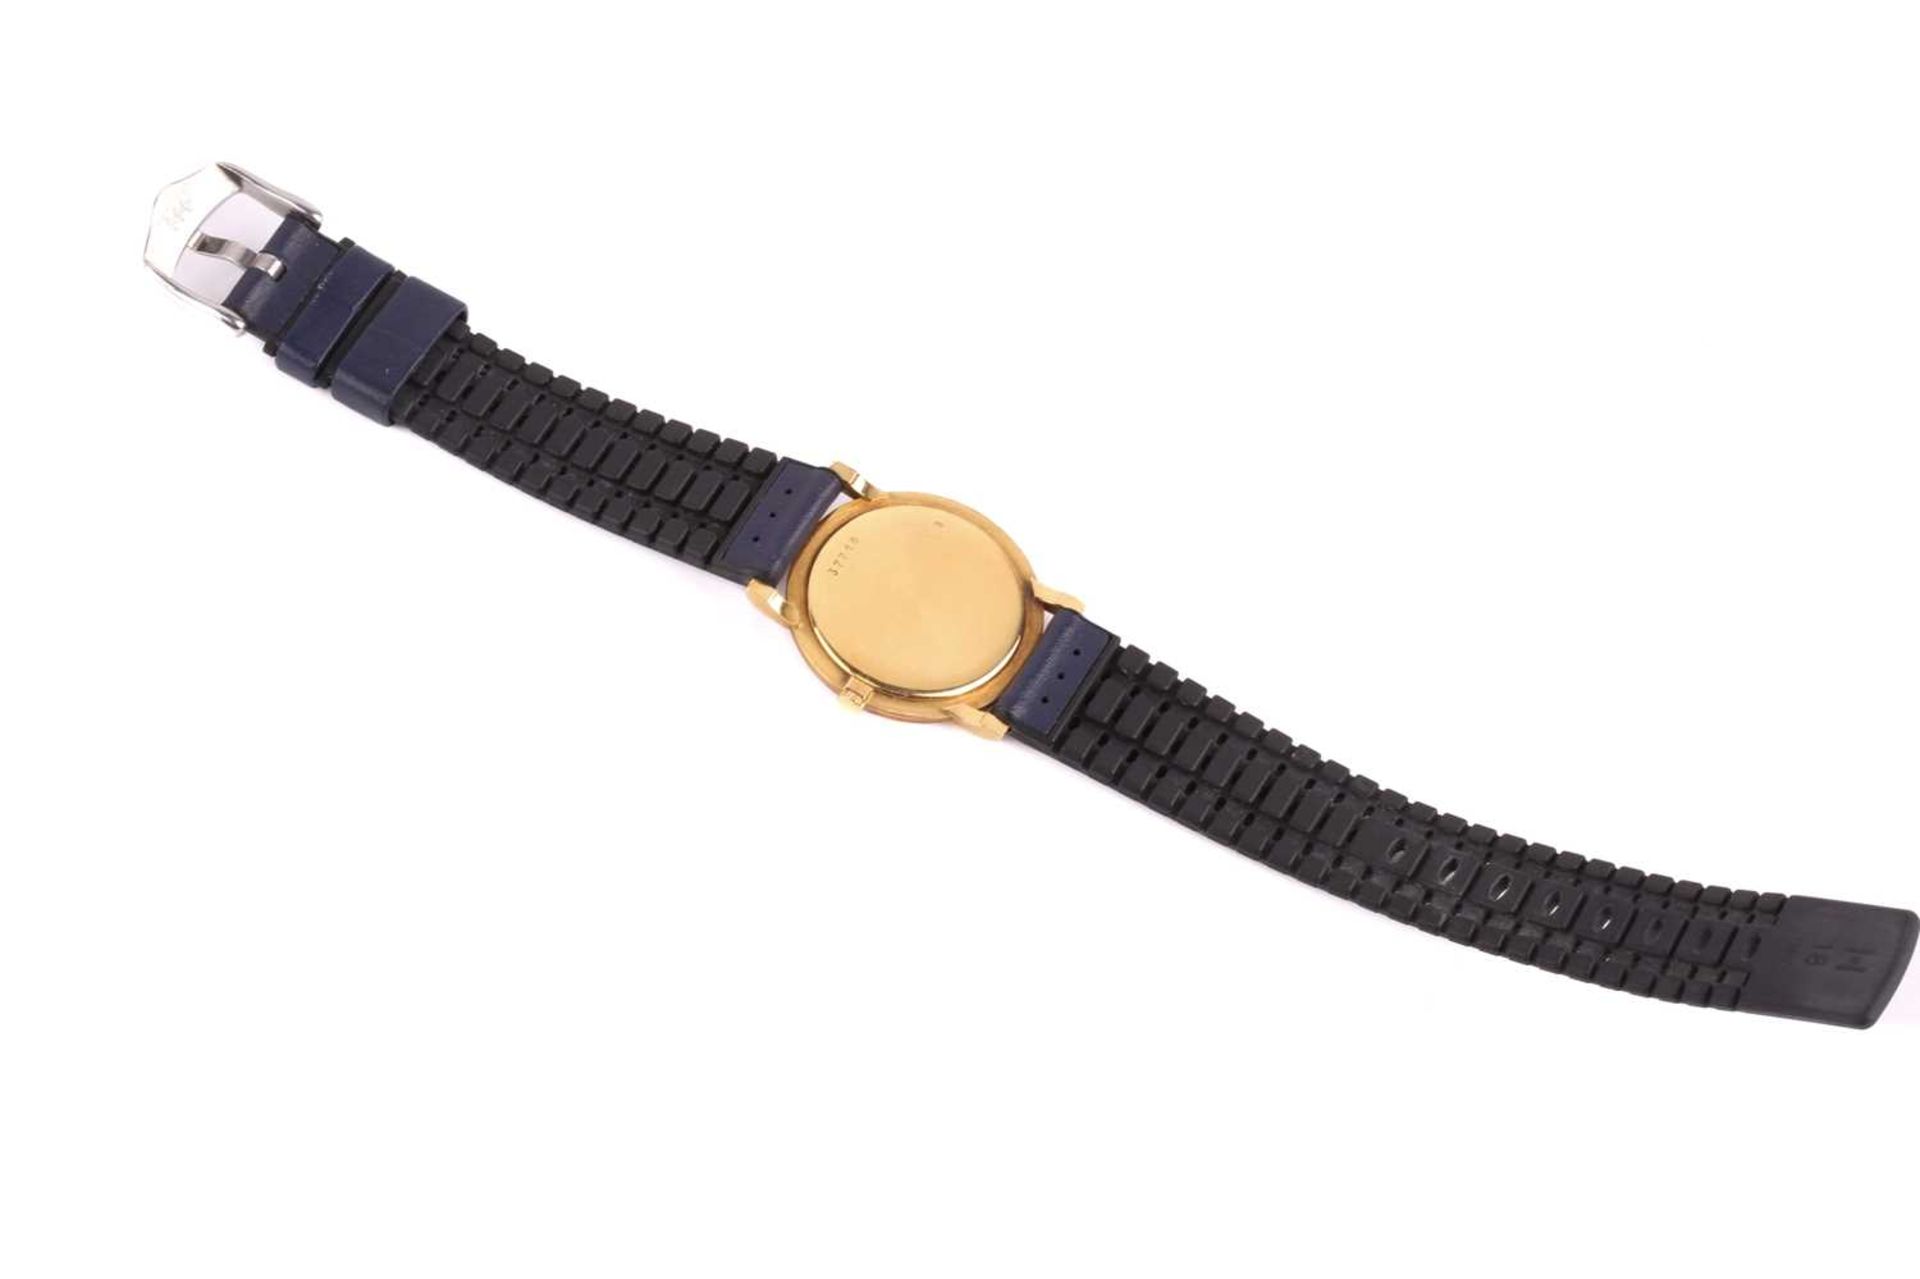 An Audemars Piguet classic gold wristwatch, featuring a Swiss-made hand-wound mechanical movement in - Image 4 of 13